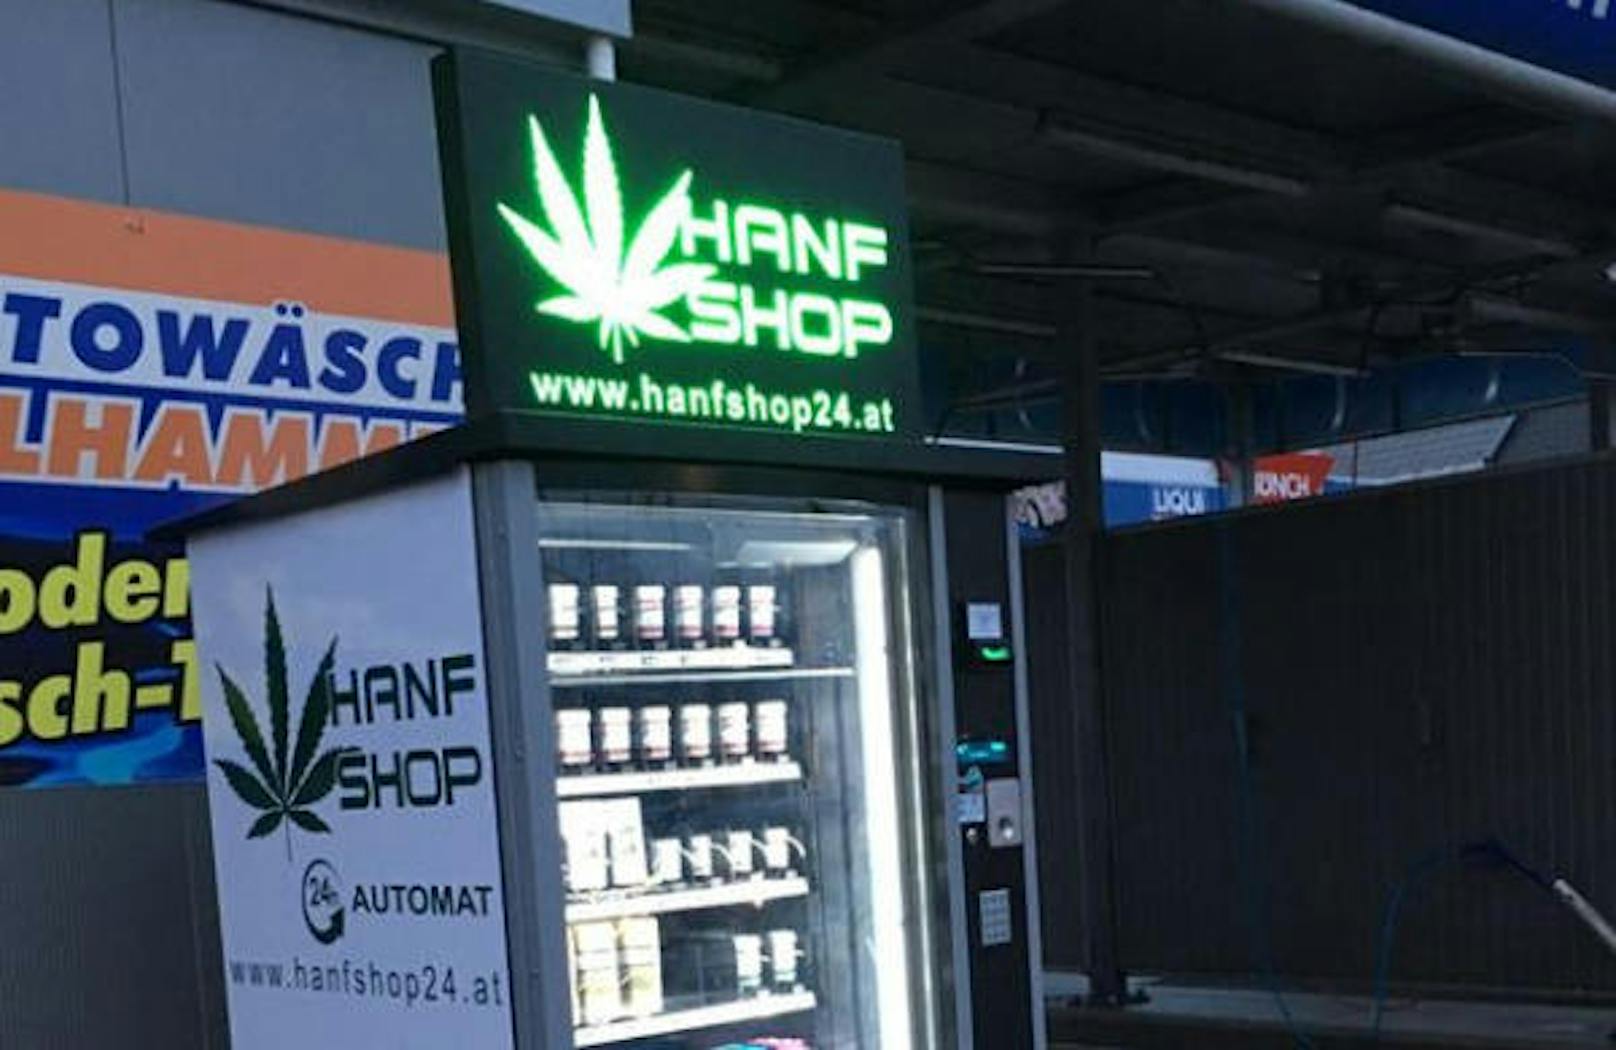 Inzwischen gibt es in mehreren Städten solche Automaten für "Cannabis light".